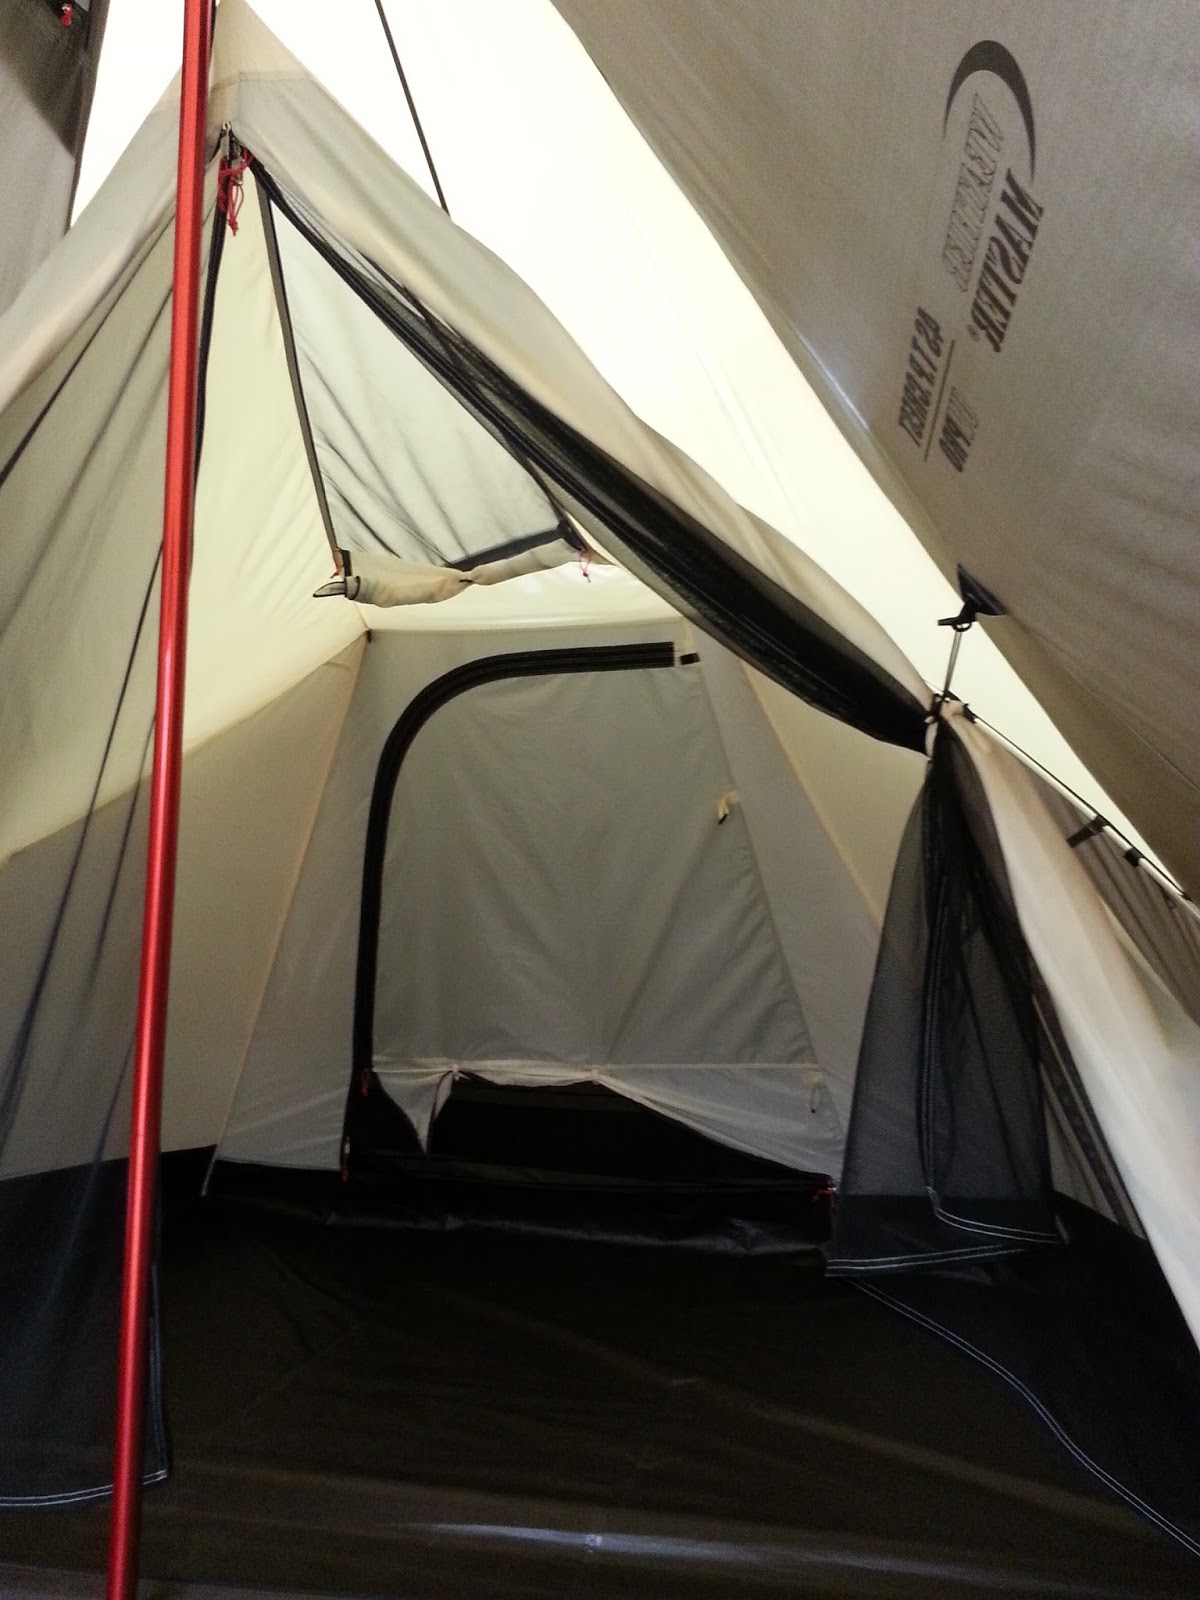 『tent』 コールマン・ウェザーマスター4sクレスト 雨に強い高めの耐水圧テント！ - camp side dish （キャンプサイドディッシュ）